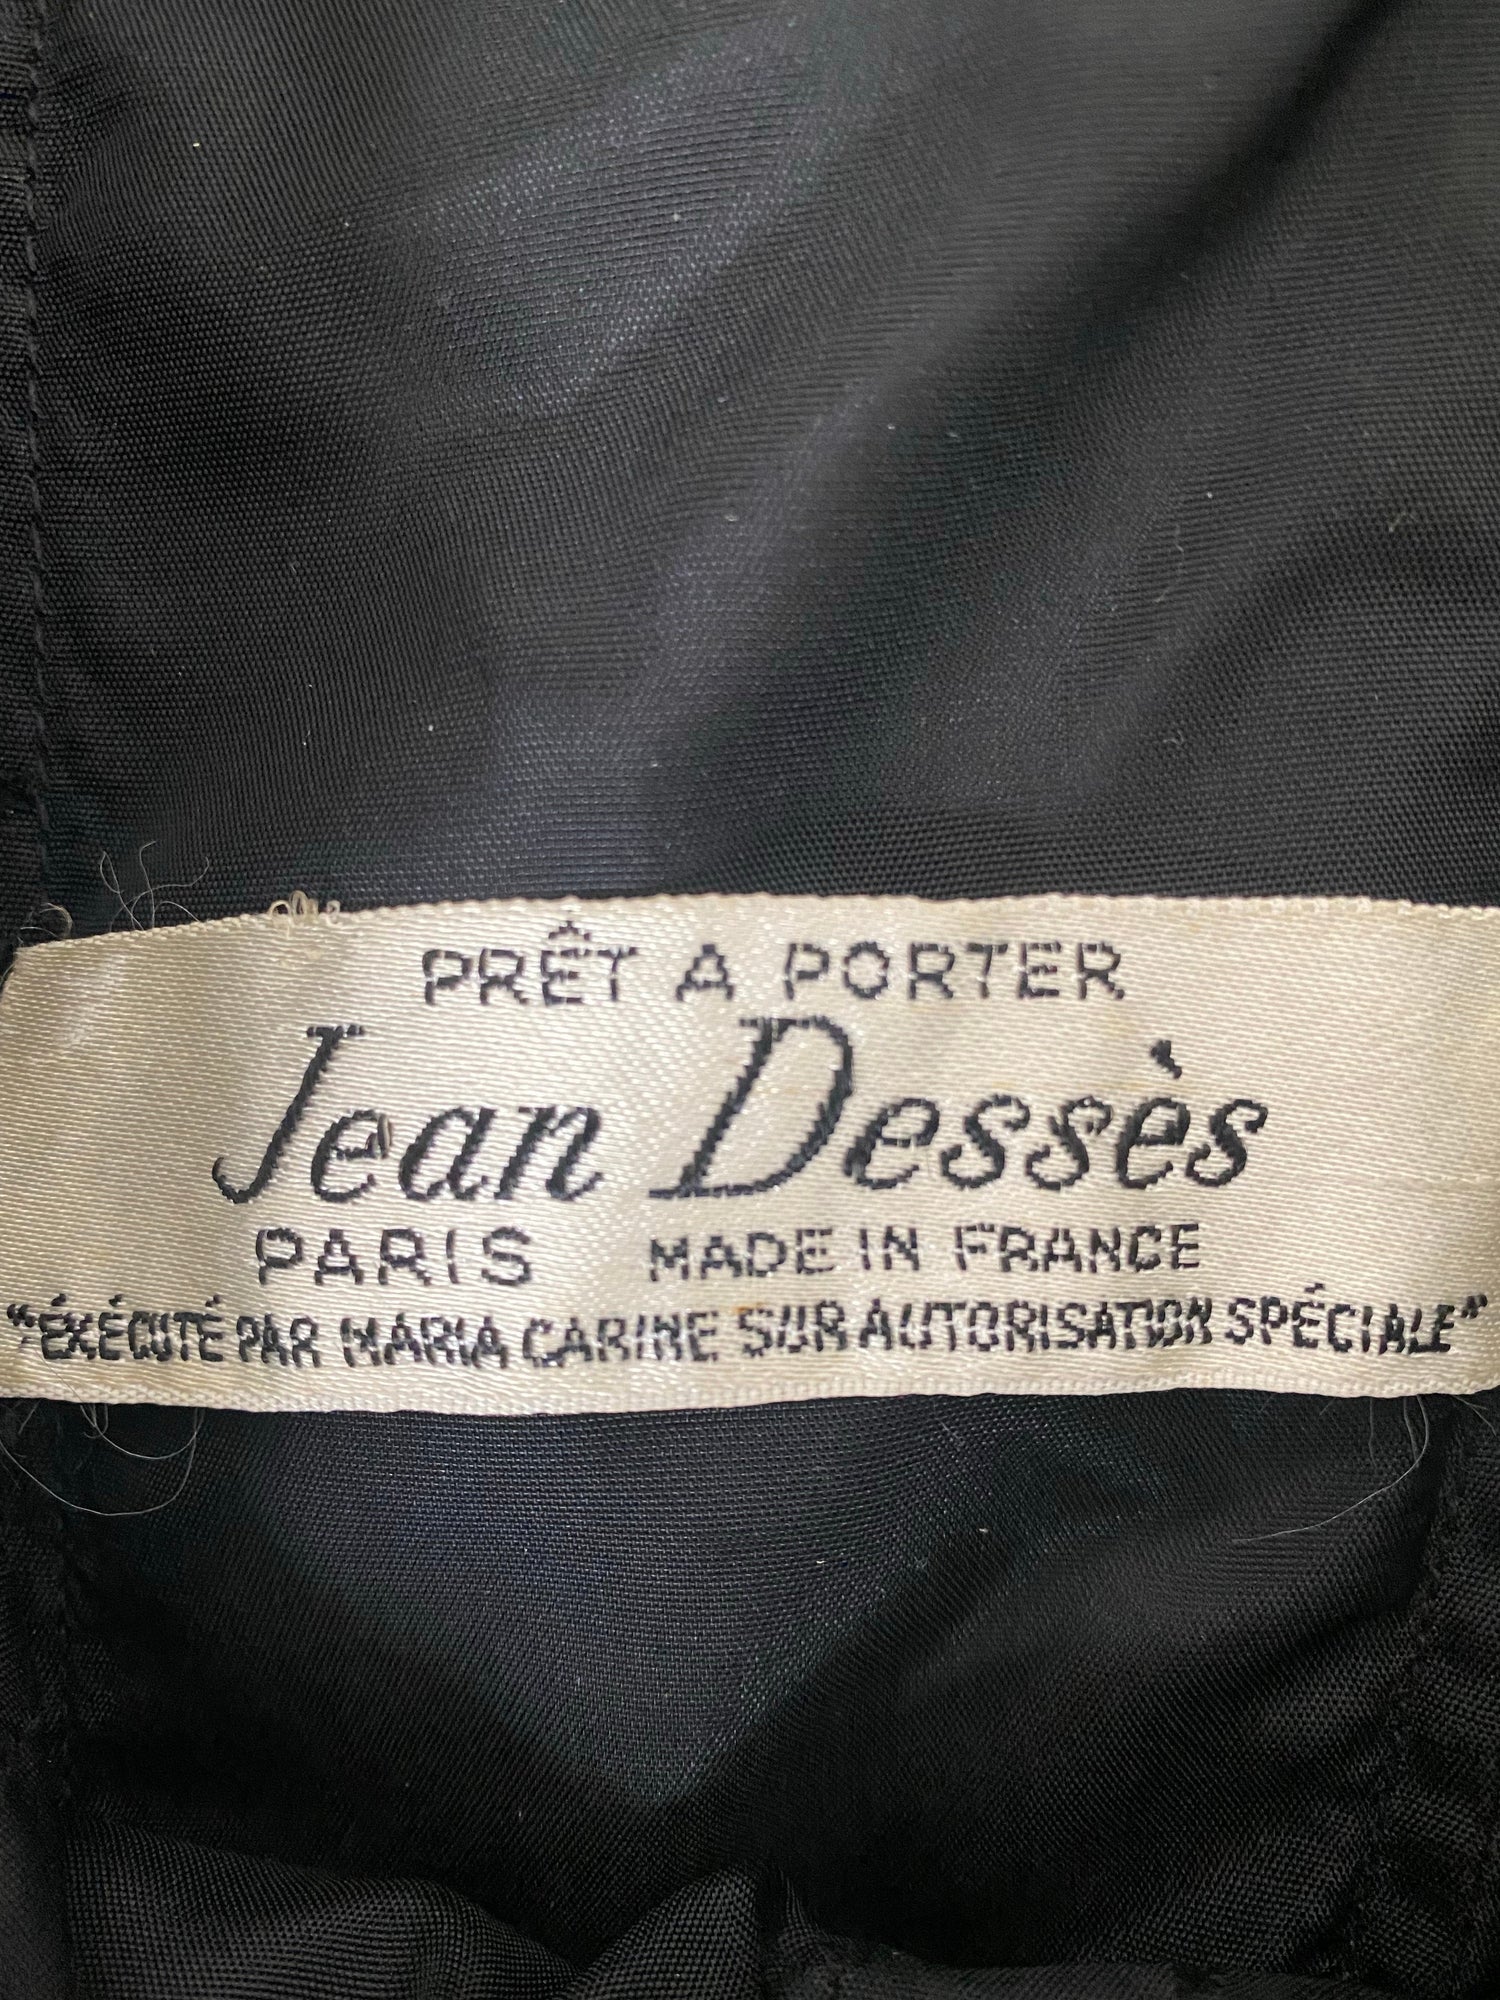 Vintage second hand Jean Dessès black cocktail dress - S - 1960s Lysis